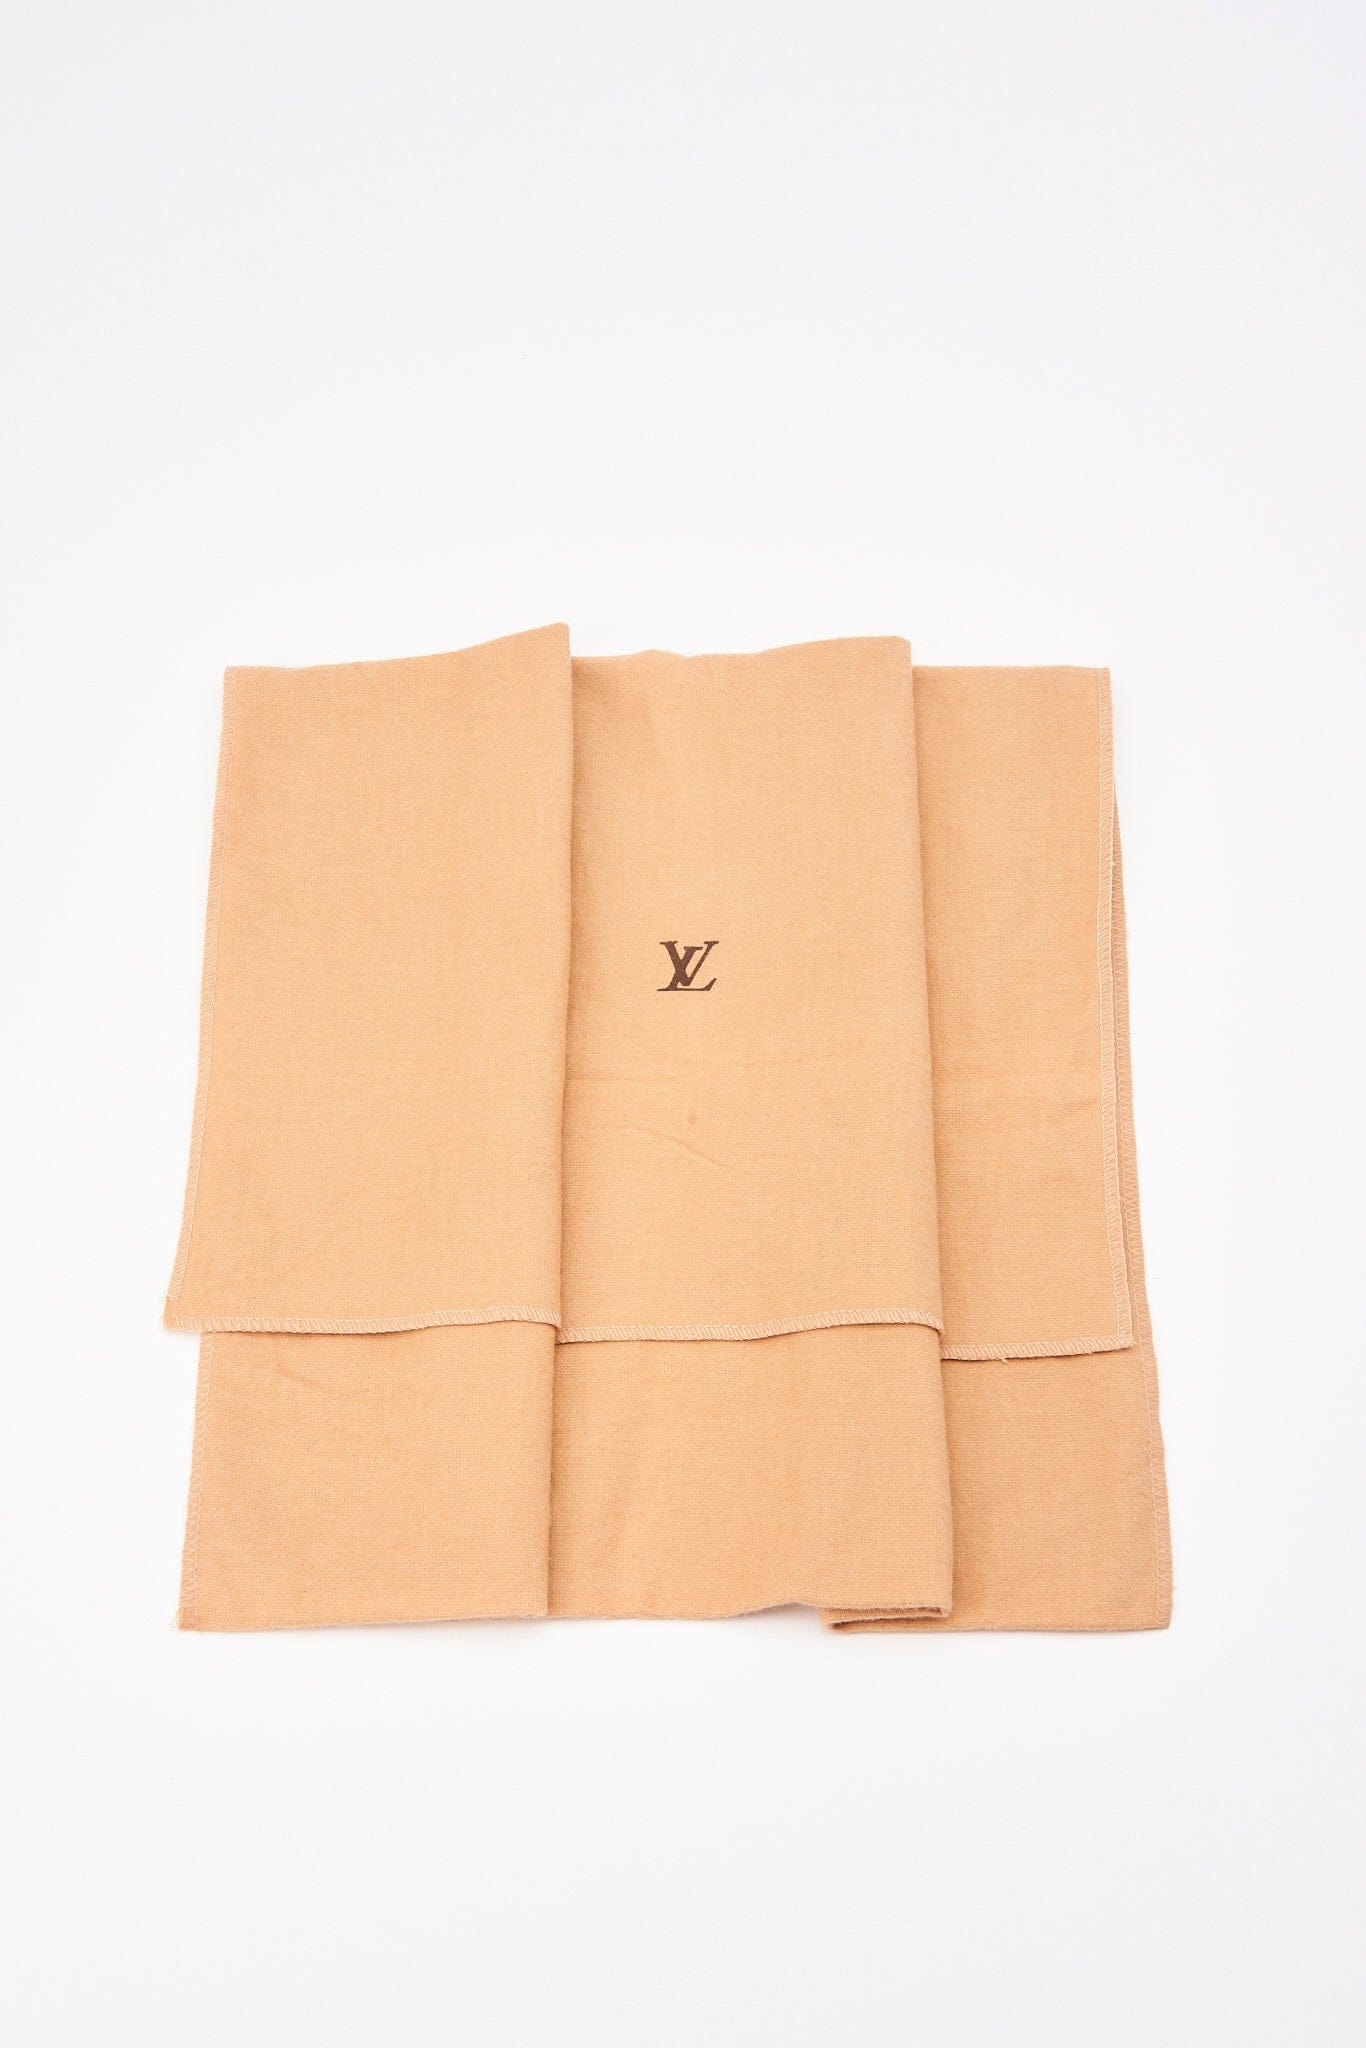 Louis Vuitton Noé Monogram Canvas Brown Bag